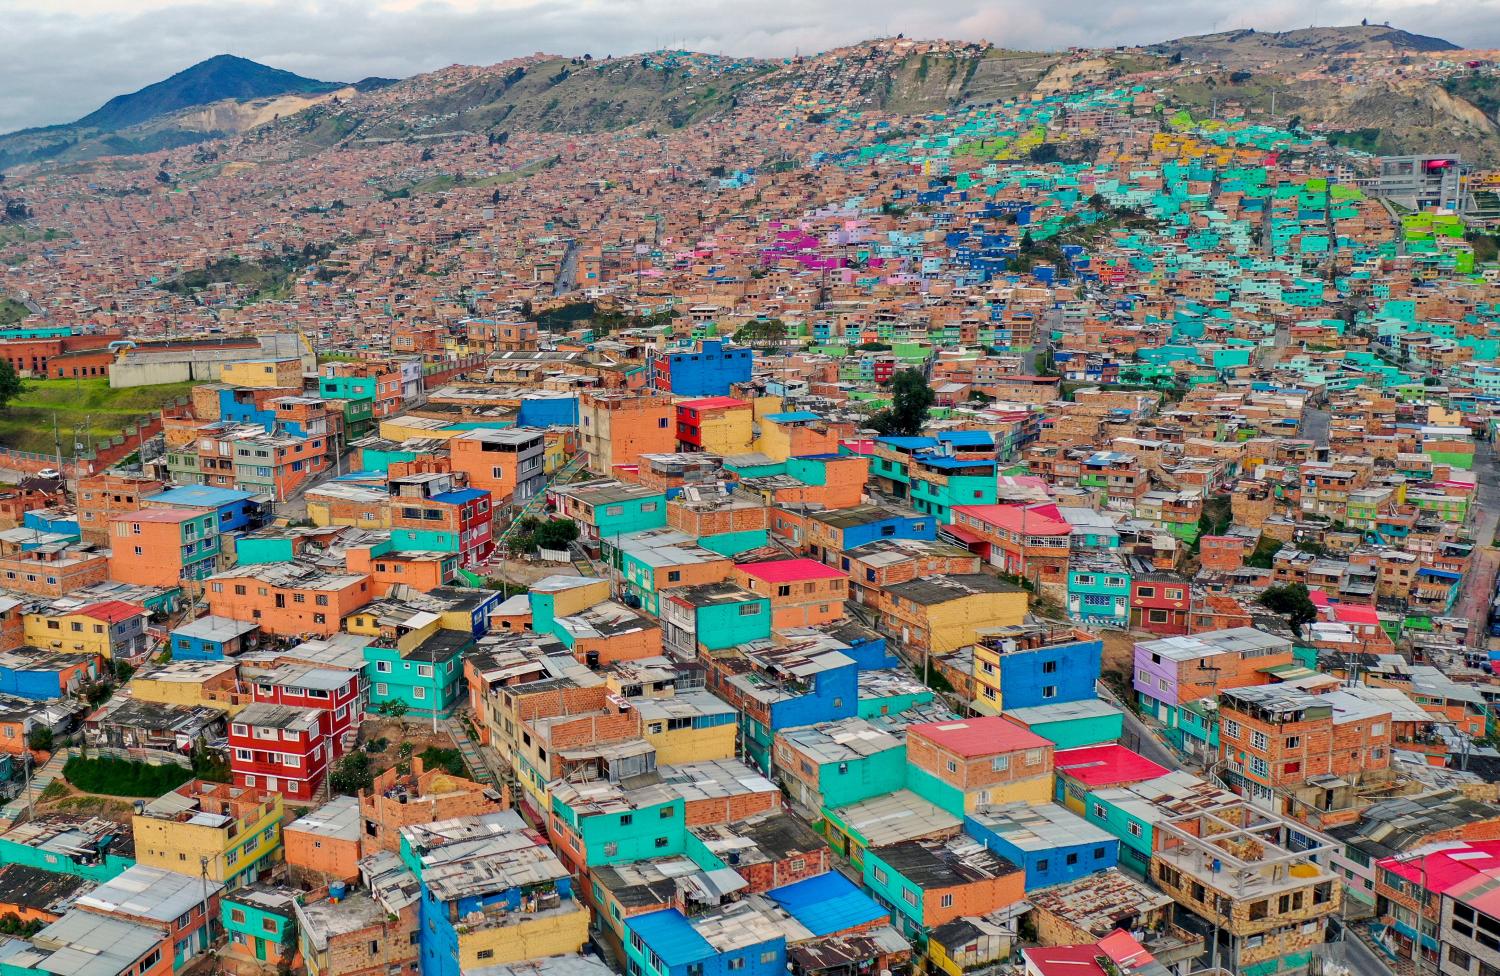 Ciudad Bolivar neighbourhood, south of Bogota, Colombia (Raul Arboleda/AFP via Getty Images)